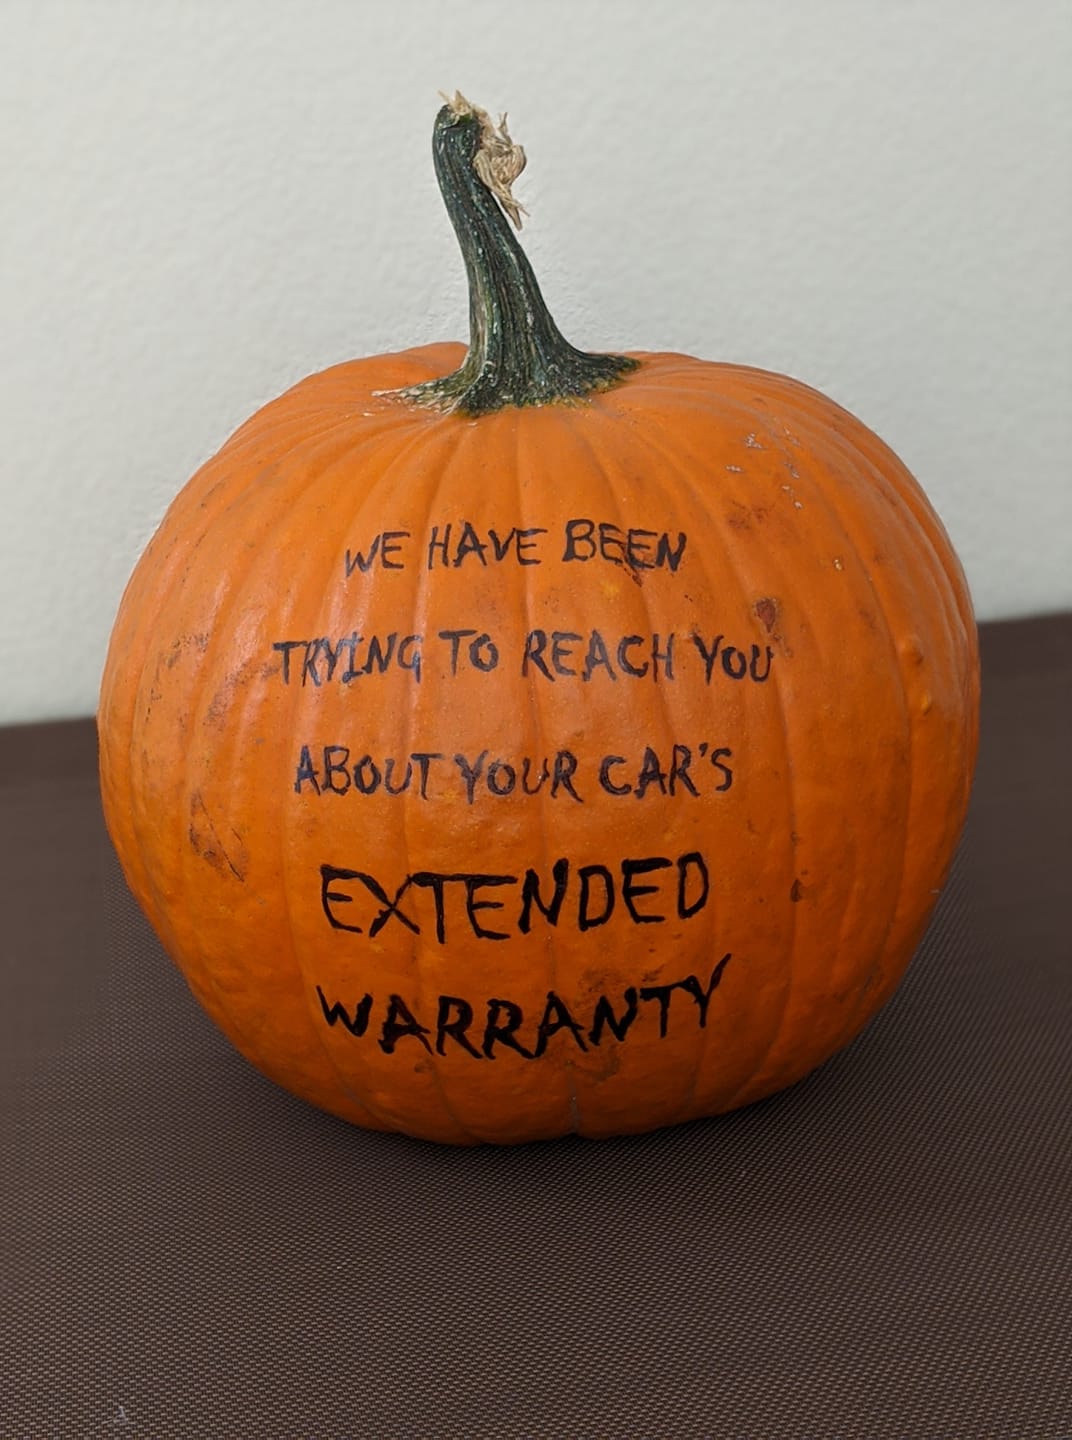 A 2020-themed pumpkin